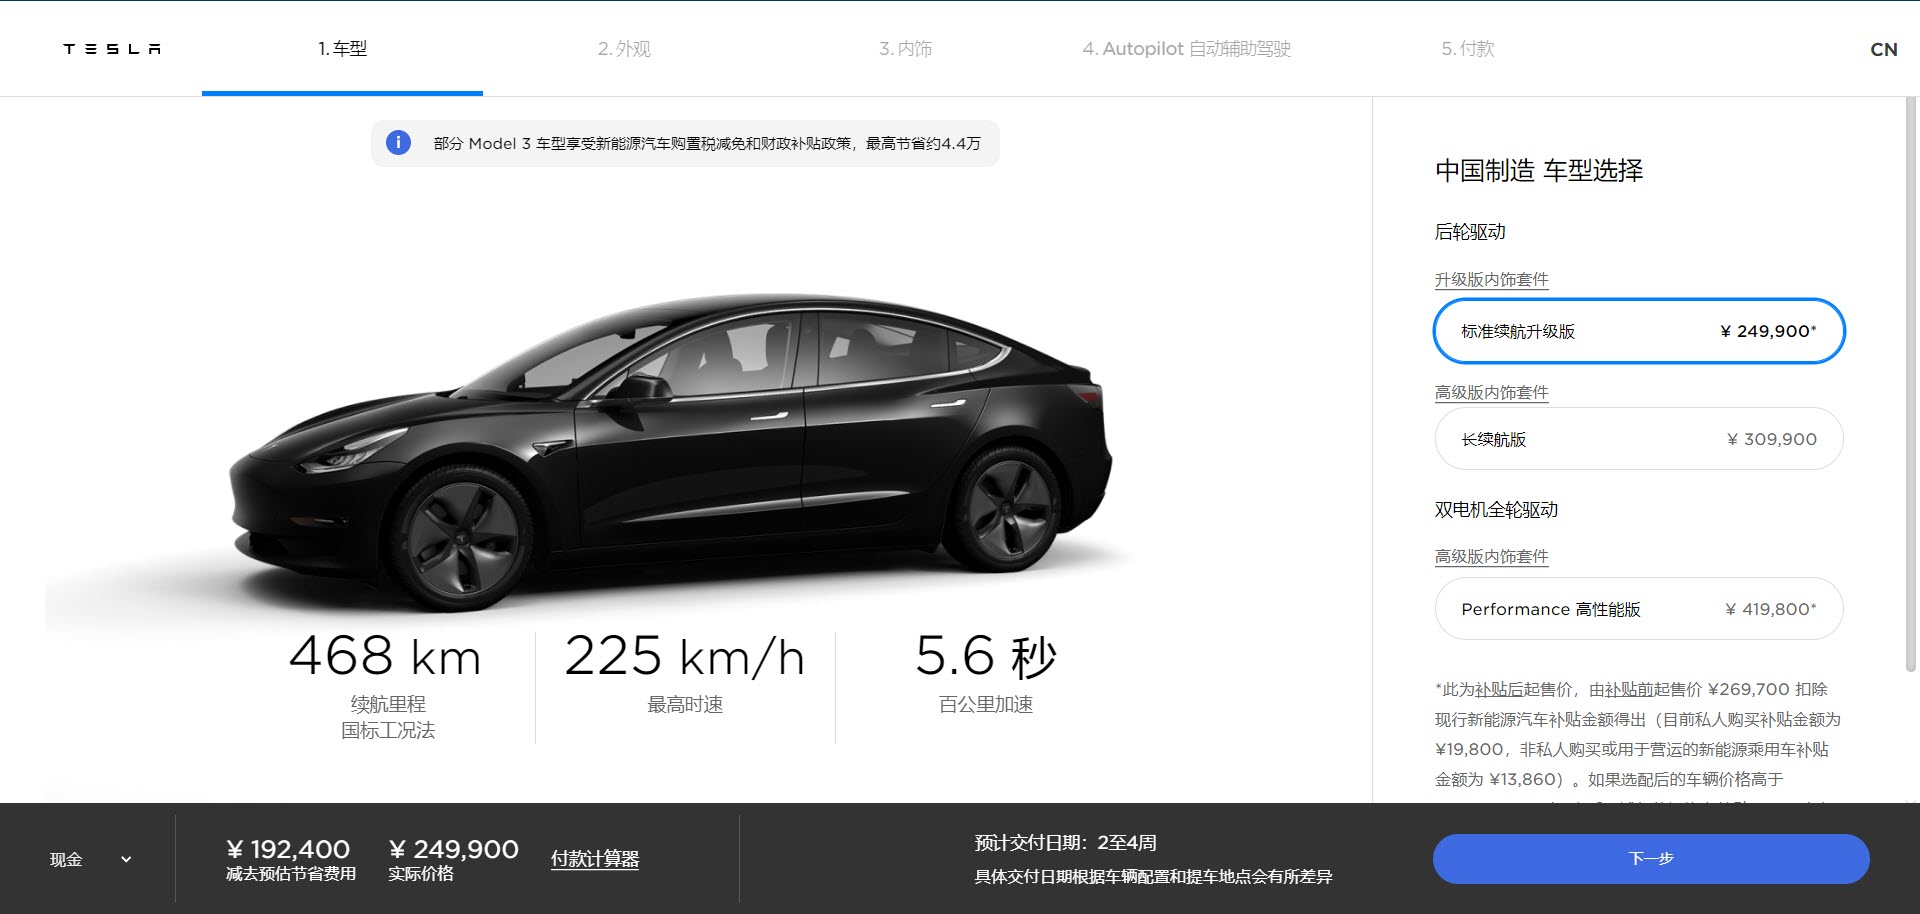 New Tesla China Design Studio